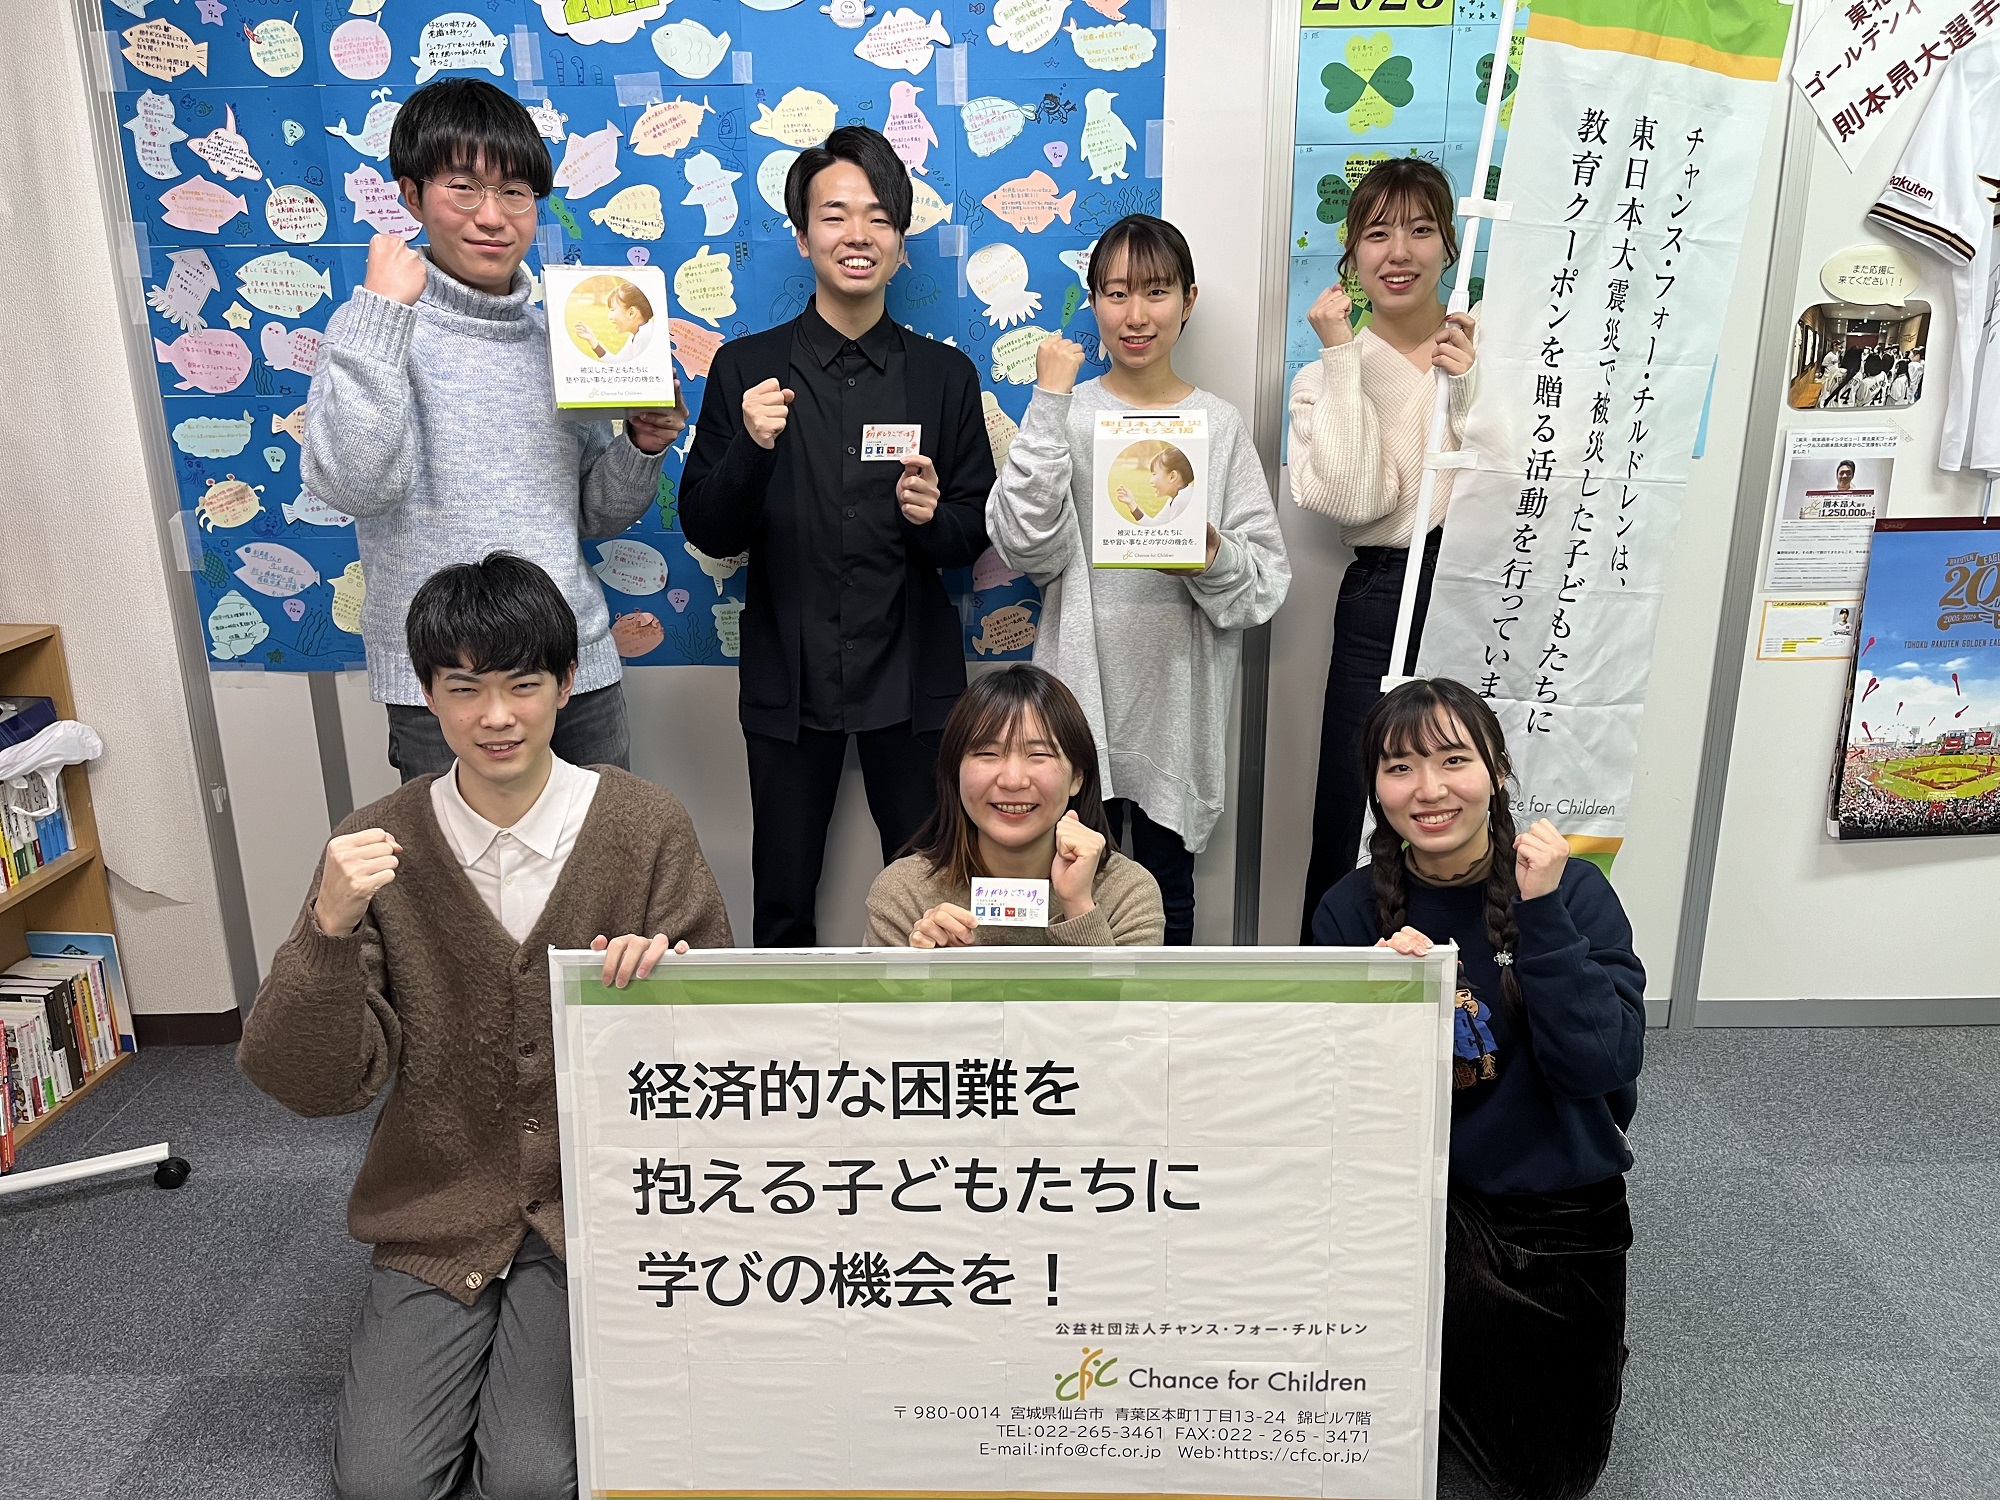 【「3.11」から13年】大学生ボランティアと宮城・東京で子ども支援の街頭募金を実施します